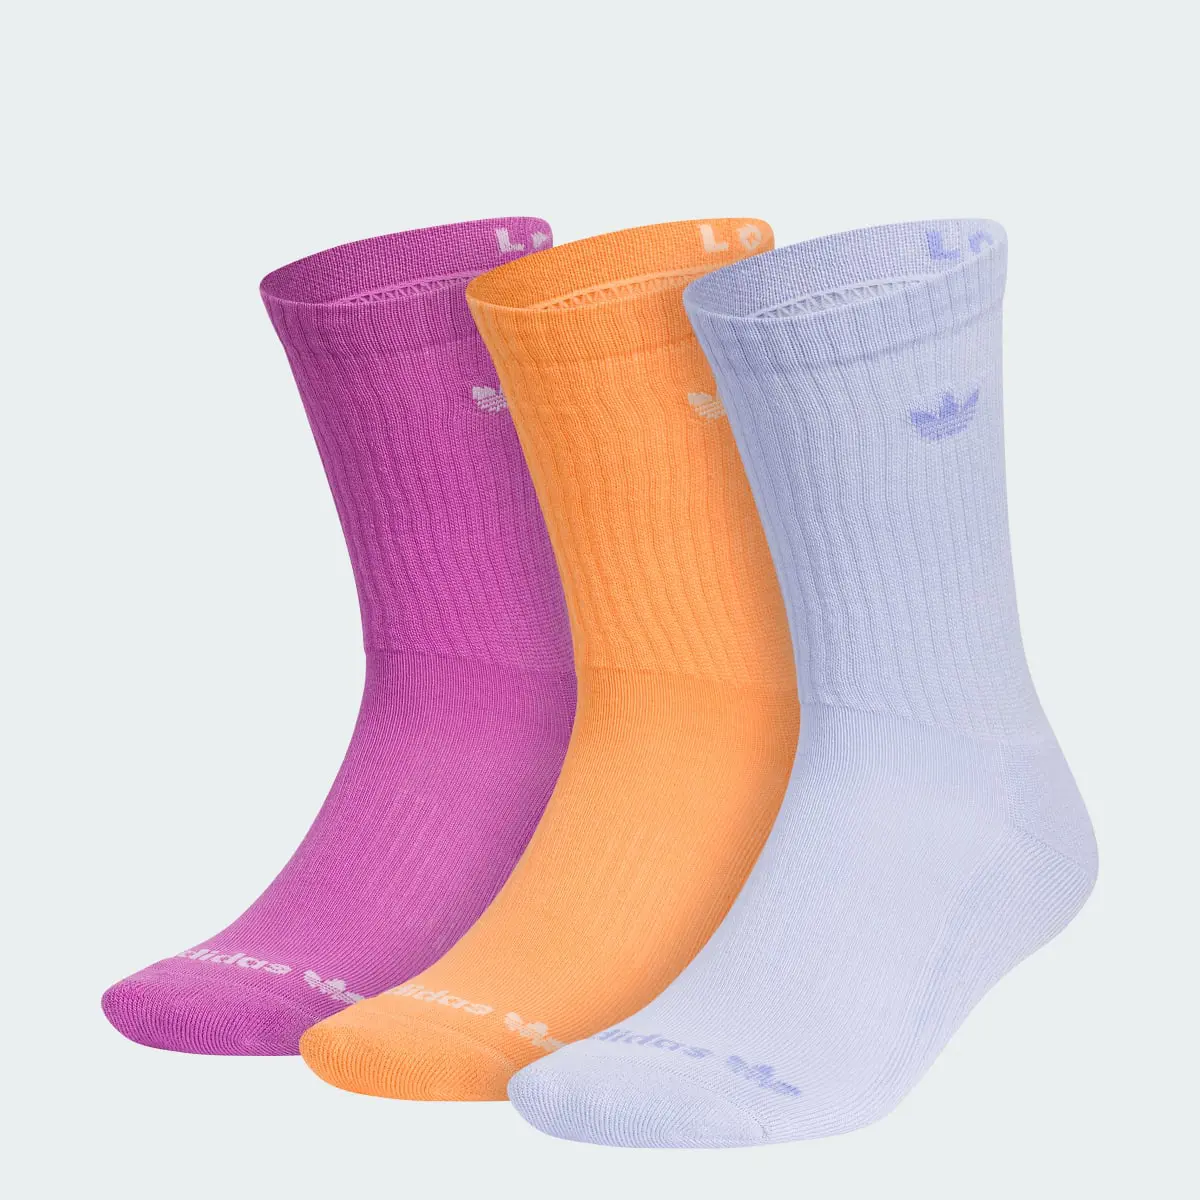 Adidas Originals Trefoil 2.0 3-Pack Crew Socks. 1